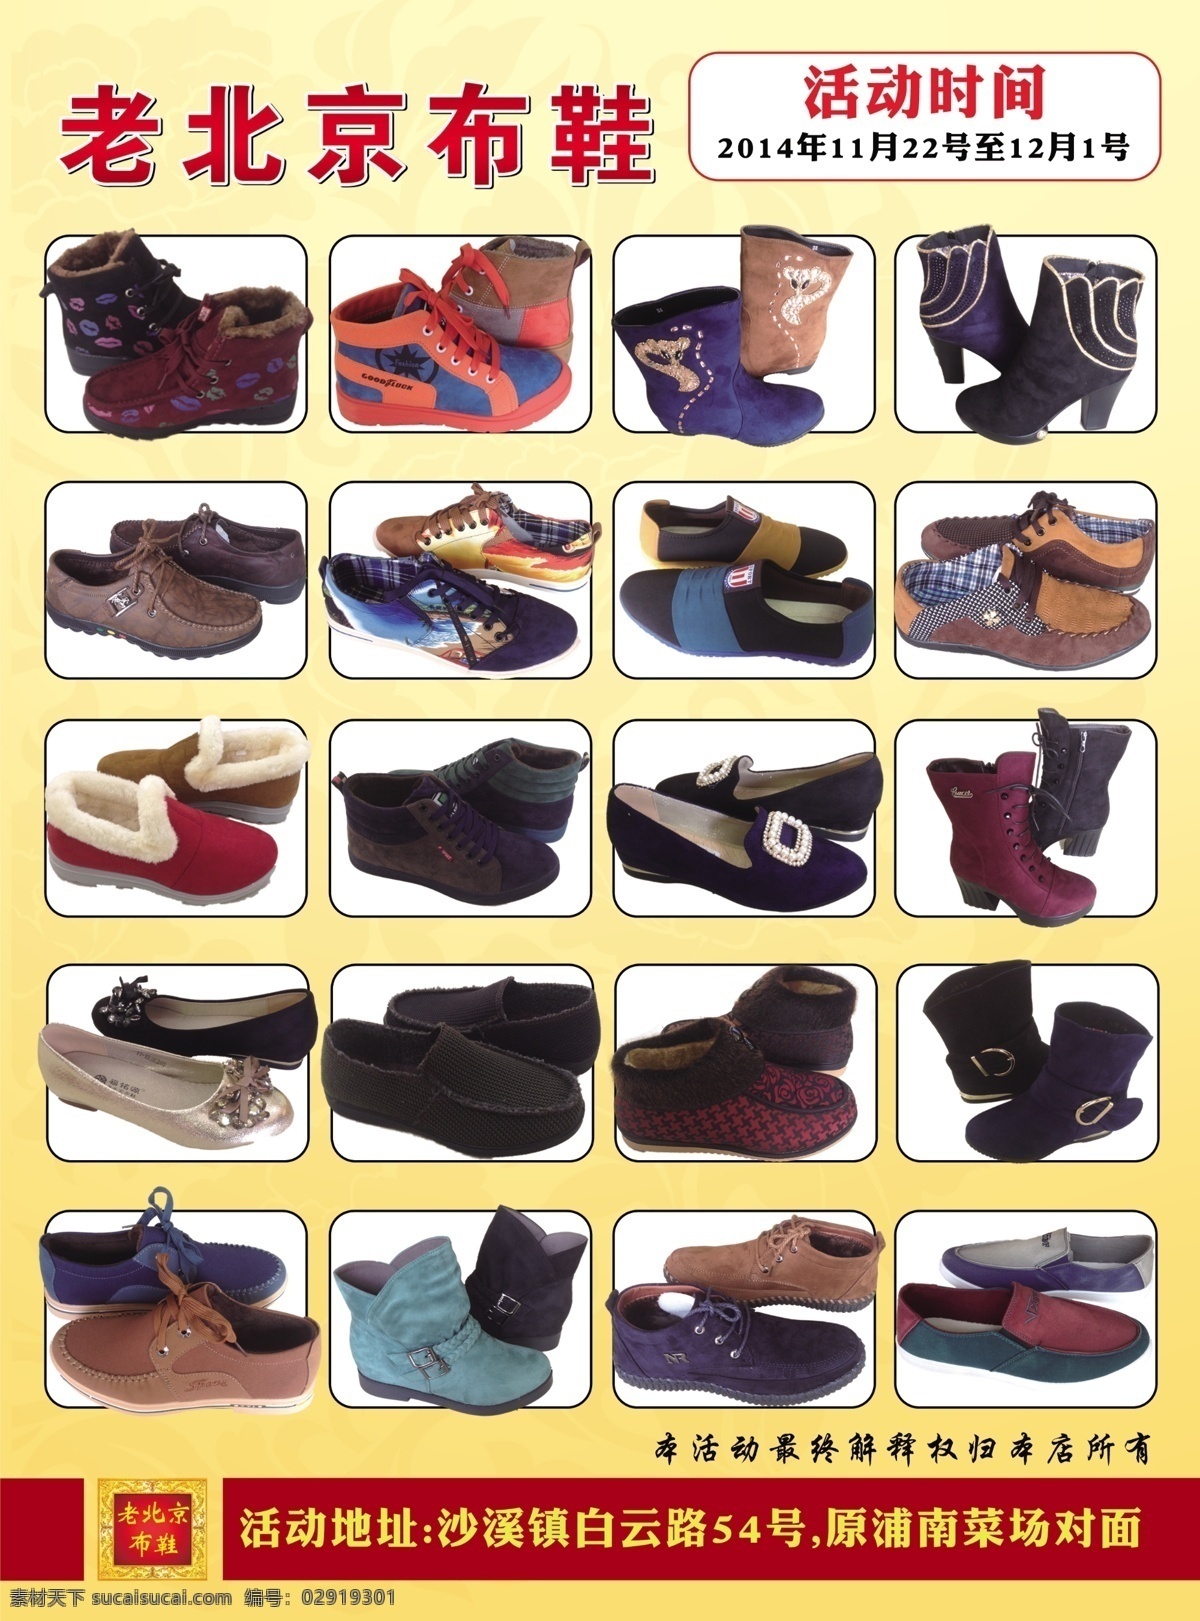 老 北京 布鞋 周年庆 老北京布鞋 金狮子 石狮子 1周年庆 感恩回馈 布鞋产品图 黄色